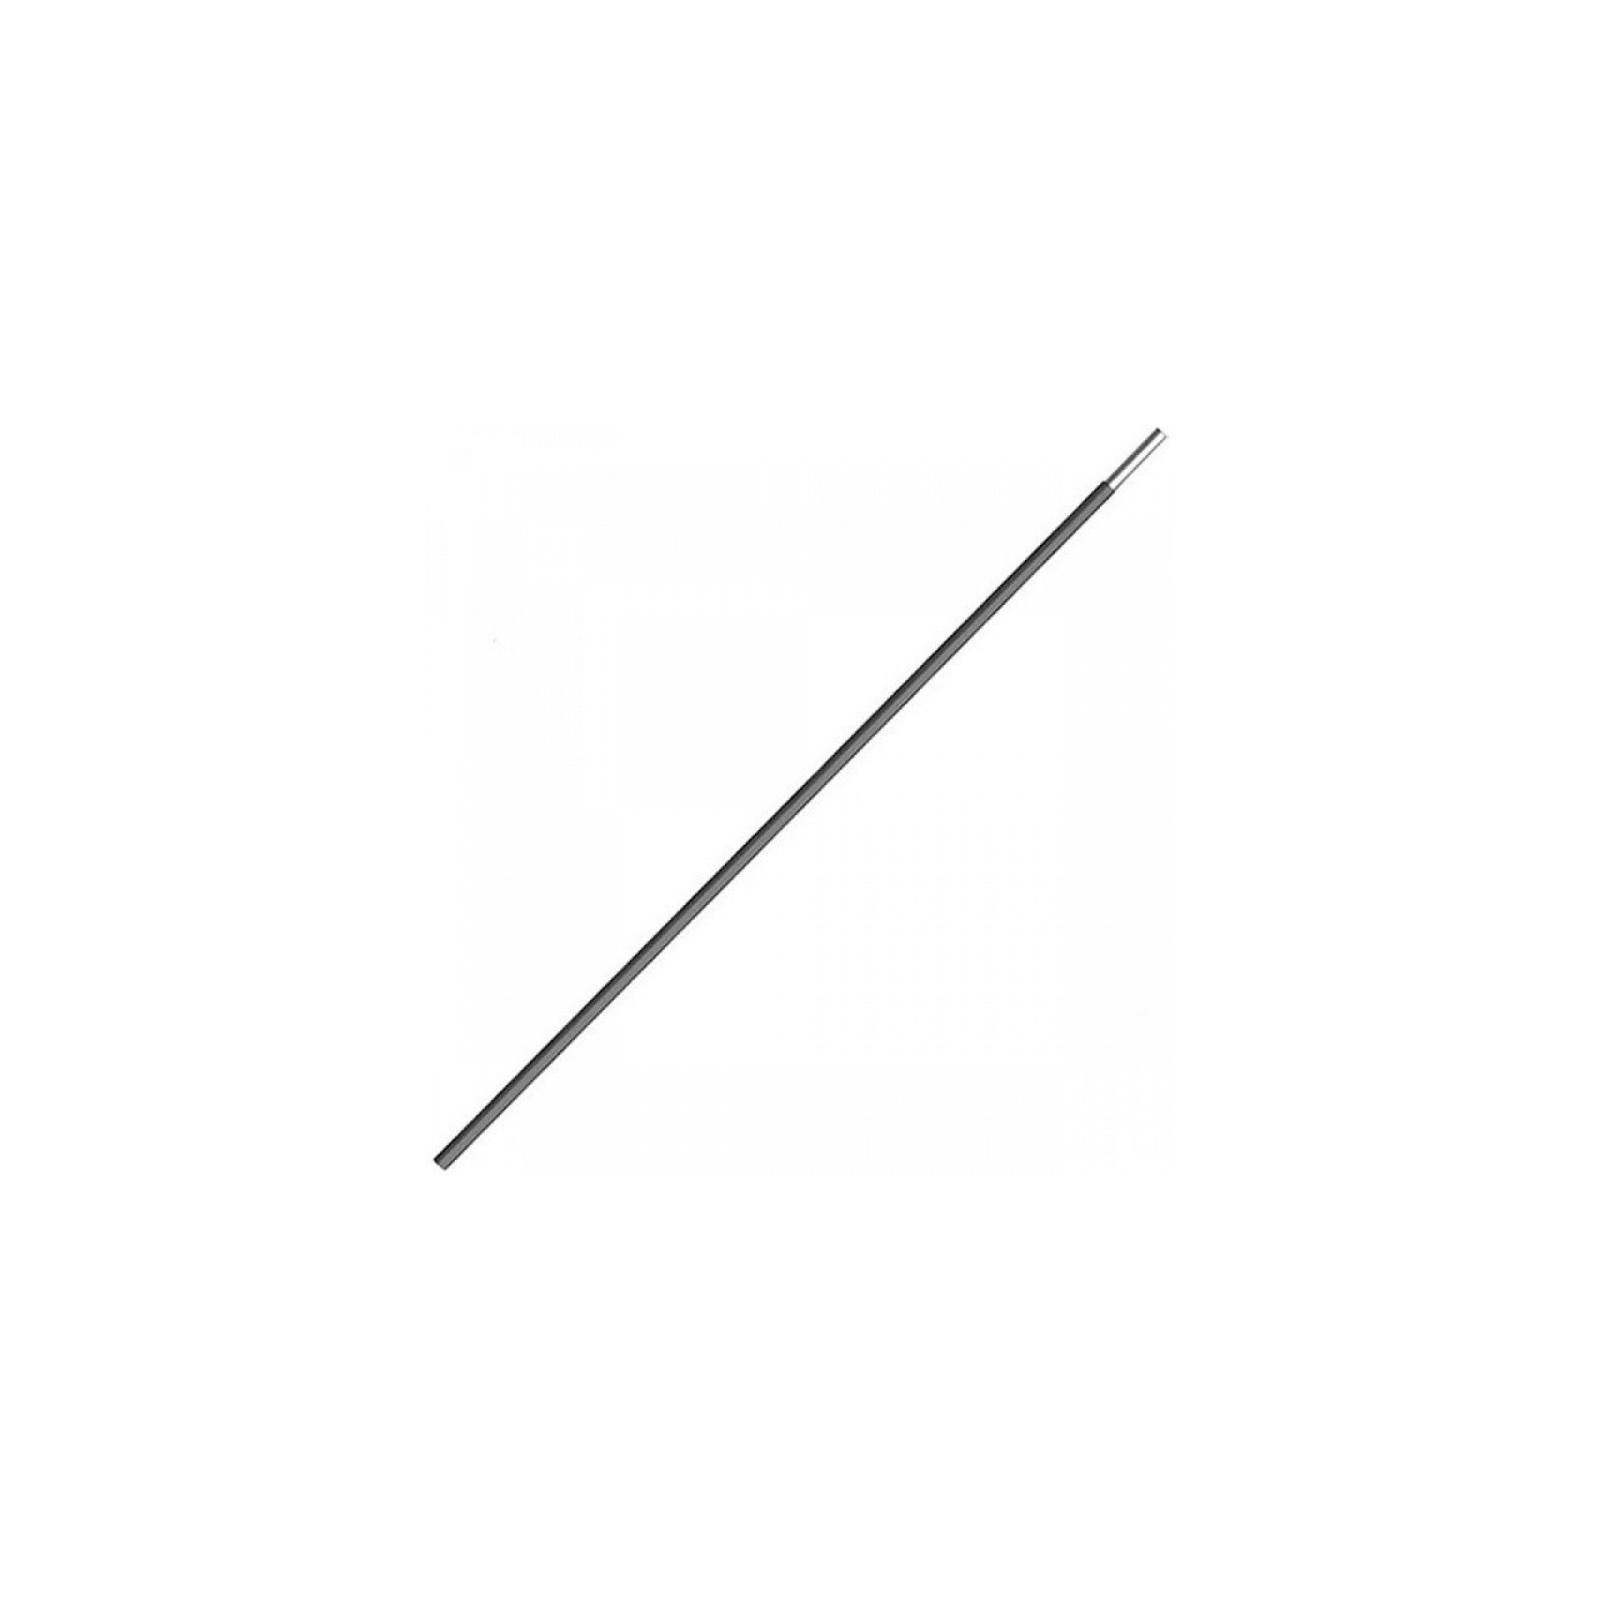 Елемент каркаса Tramp Сегмент дуги фибергласс 8,5 мм (TRA-010)